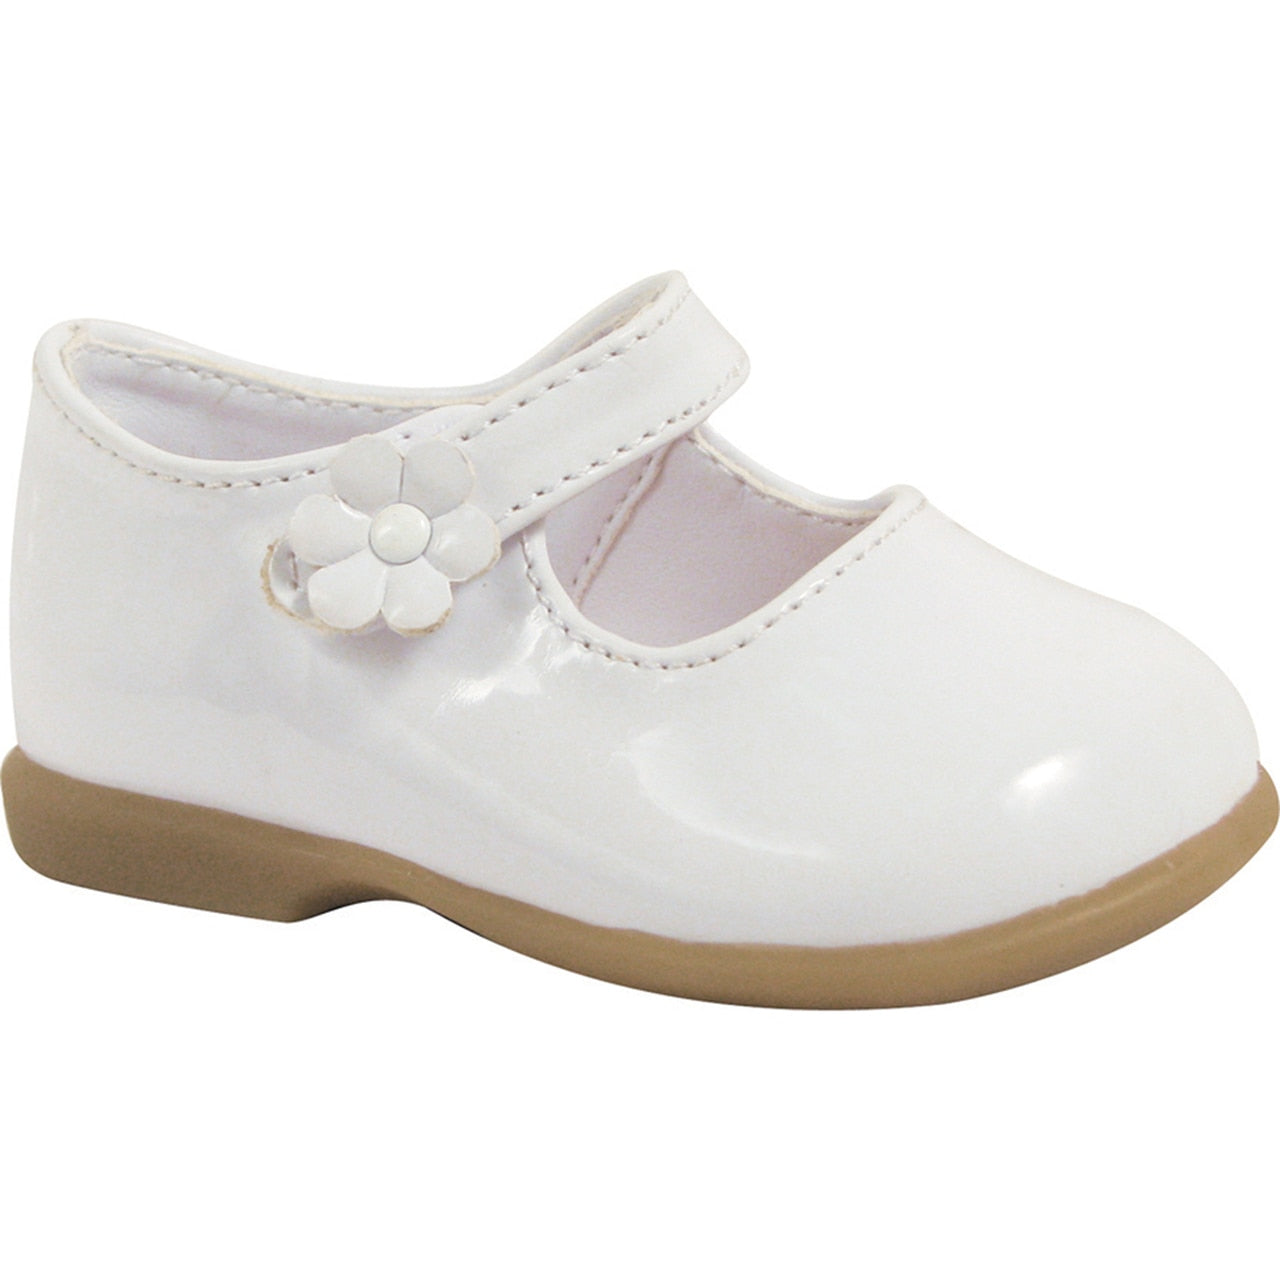 White Patent Mary Jane Dress Flat Shoe